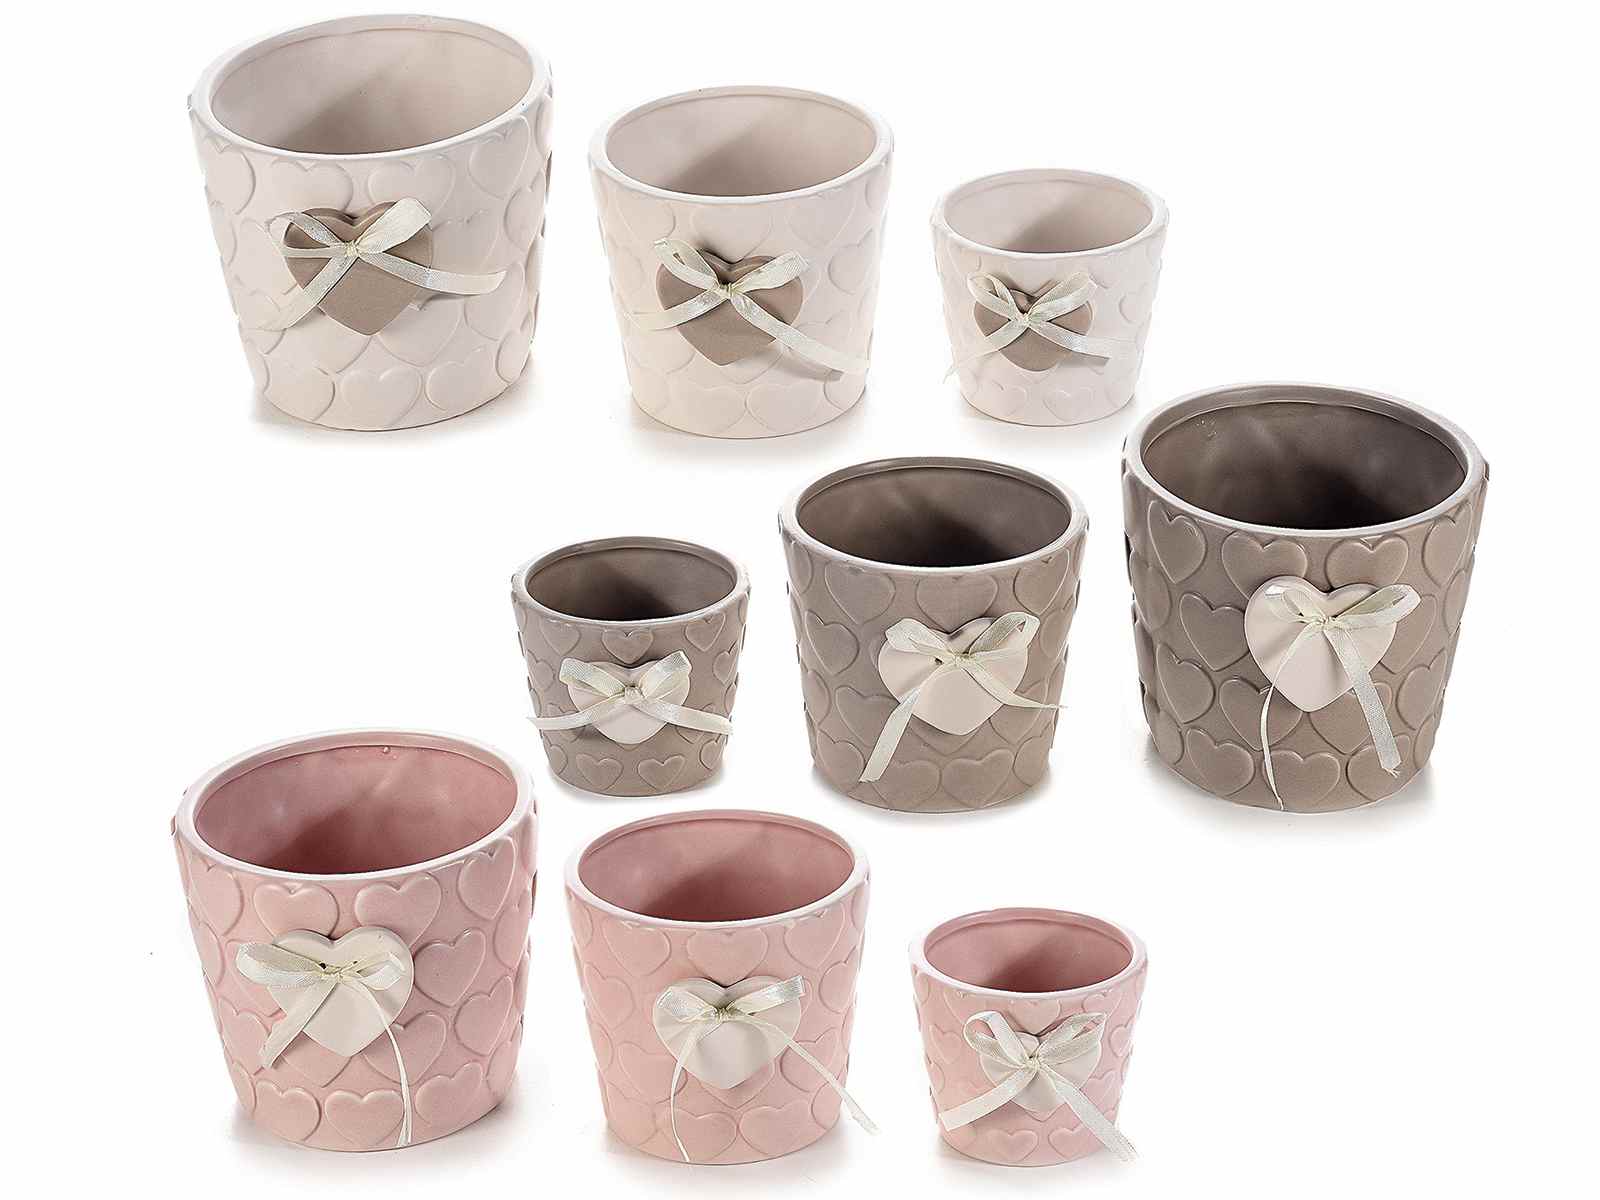 3 unidades, alturas: 21 cm, 15,5 cm y 13 cm, ideal para regalo Juego de jarrones de cerámica para decorar mesa Purelifestyle GYP051 color blanco cálido 